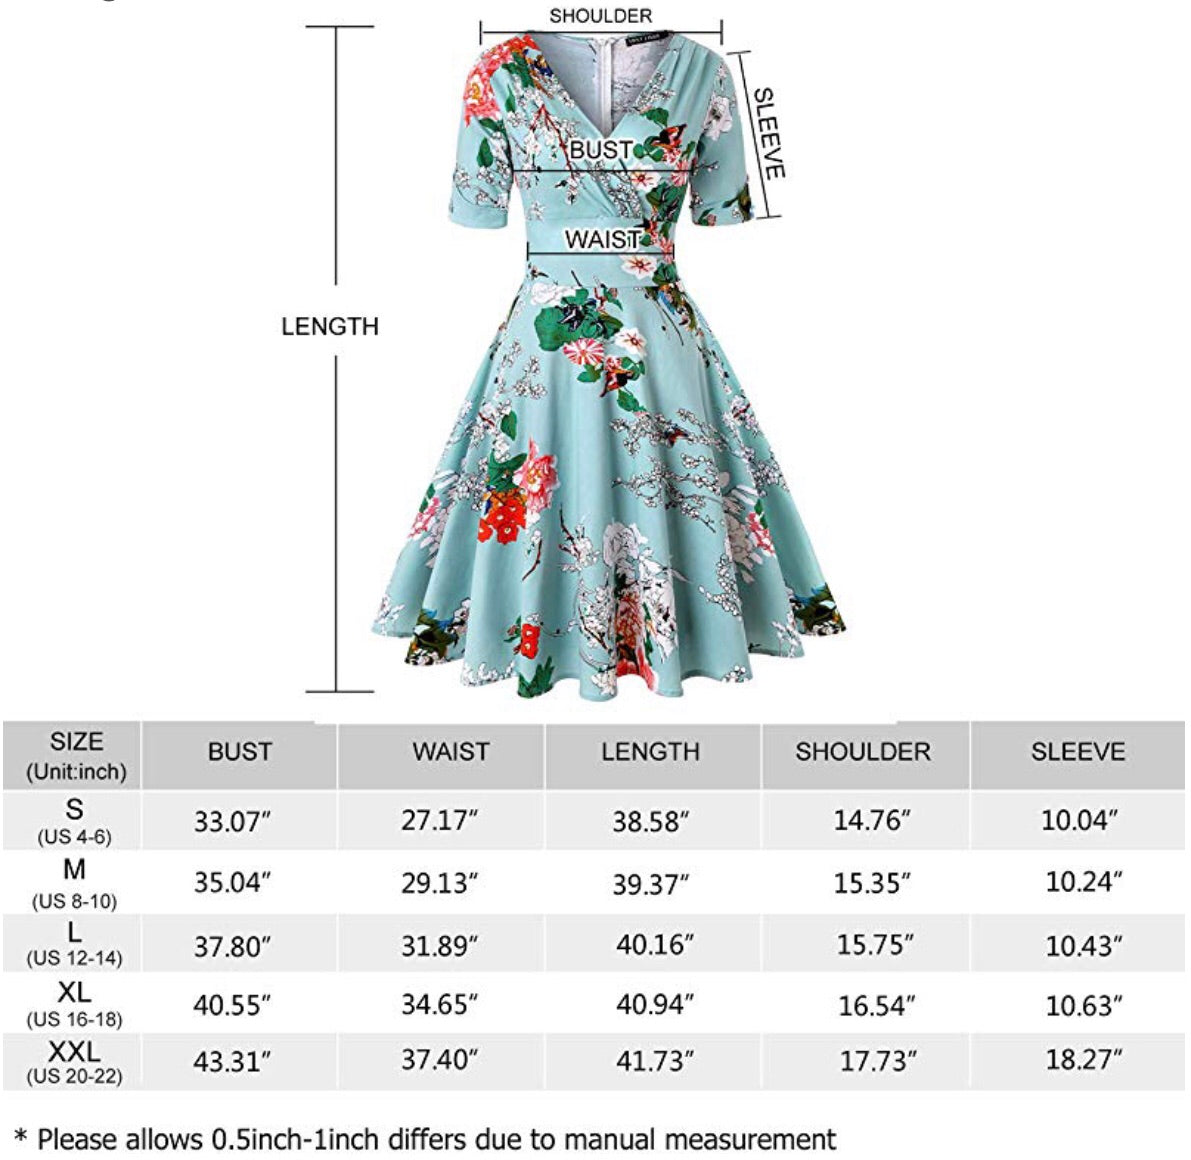 V-Neck Retro Look Swing Dress, Sizes Small - 2XLarge (US Sizes 4 - 22 ...